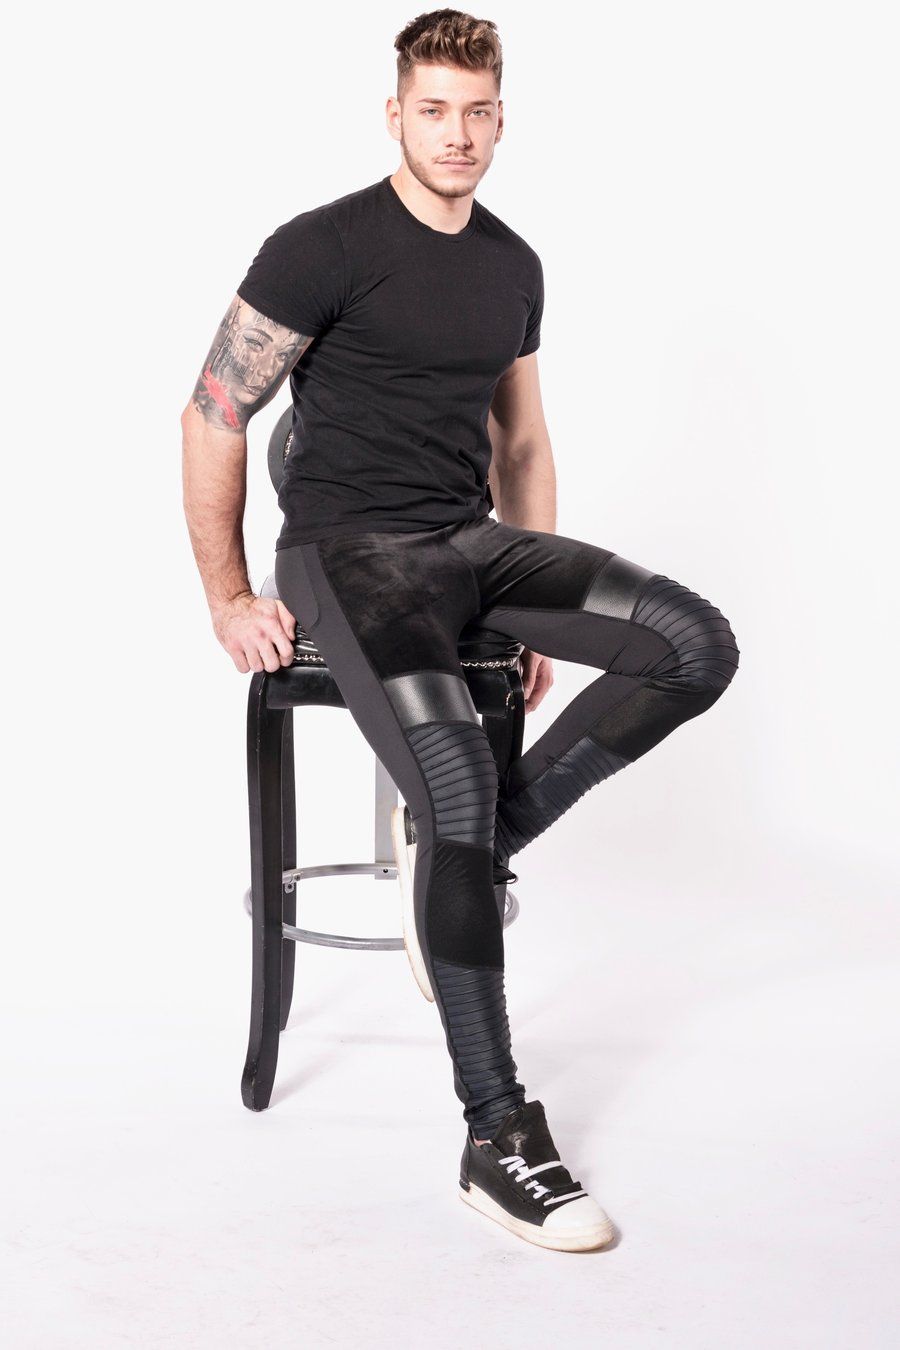 Printed and designable mens leggings